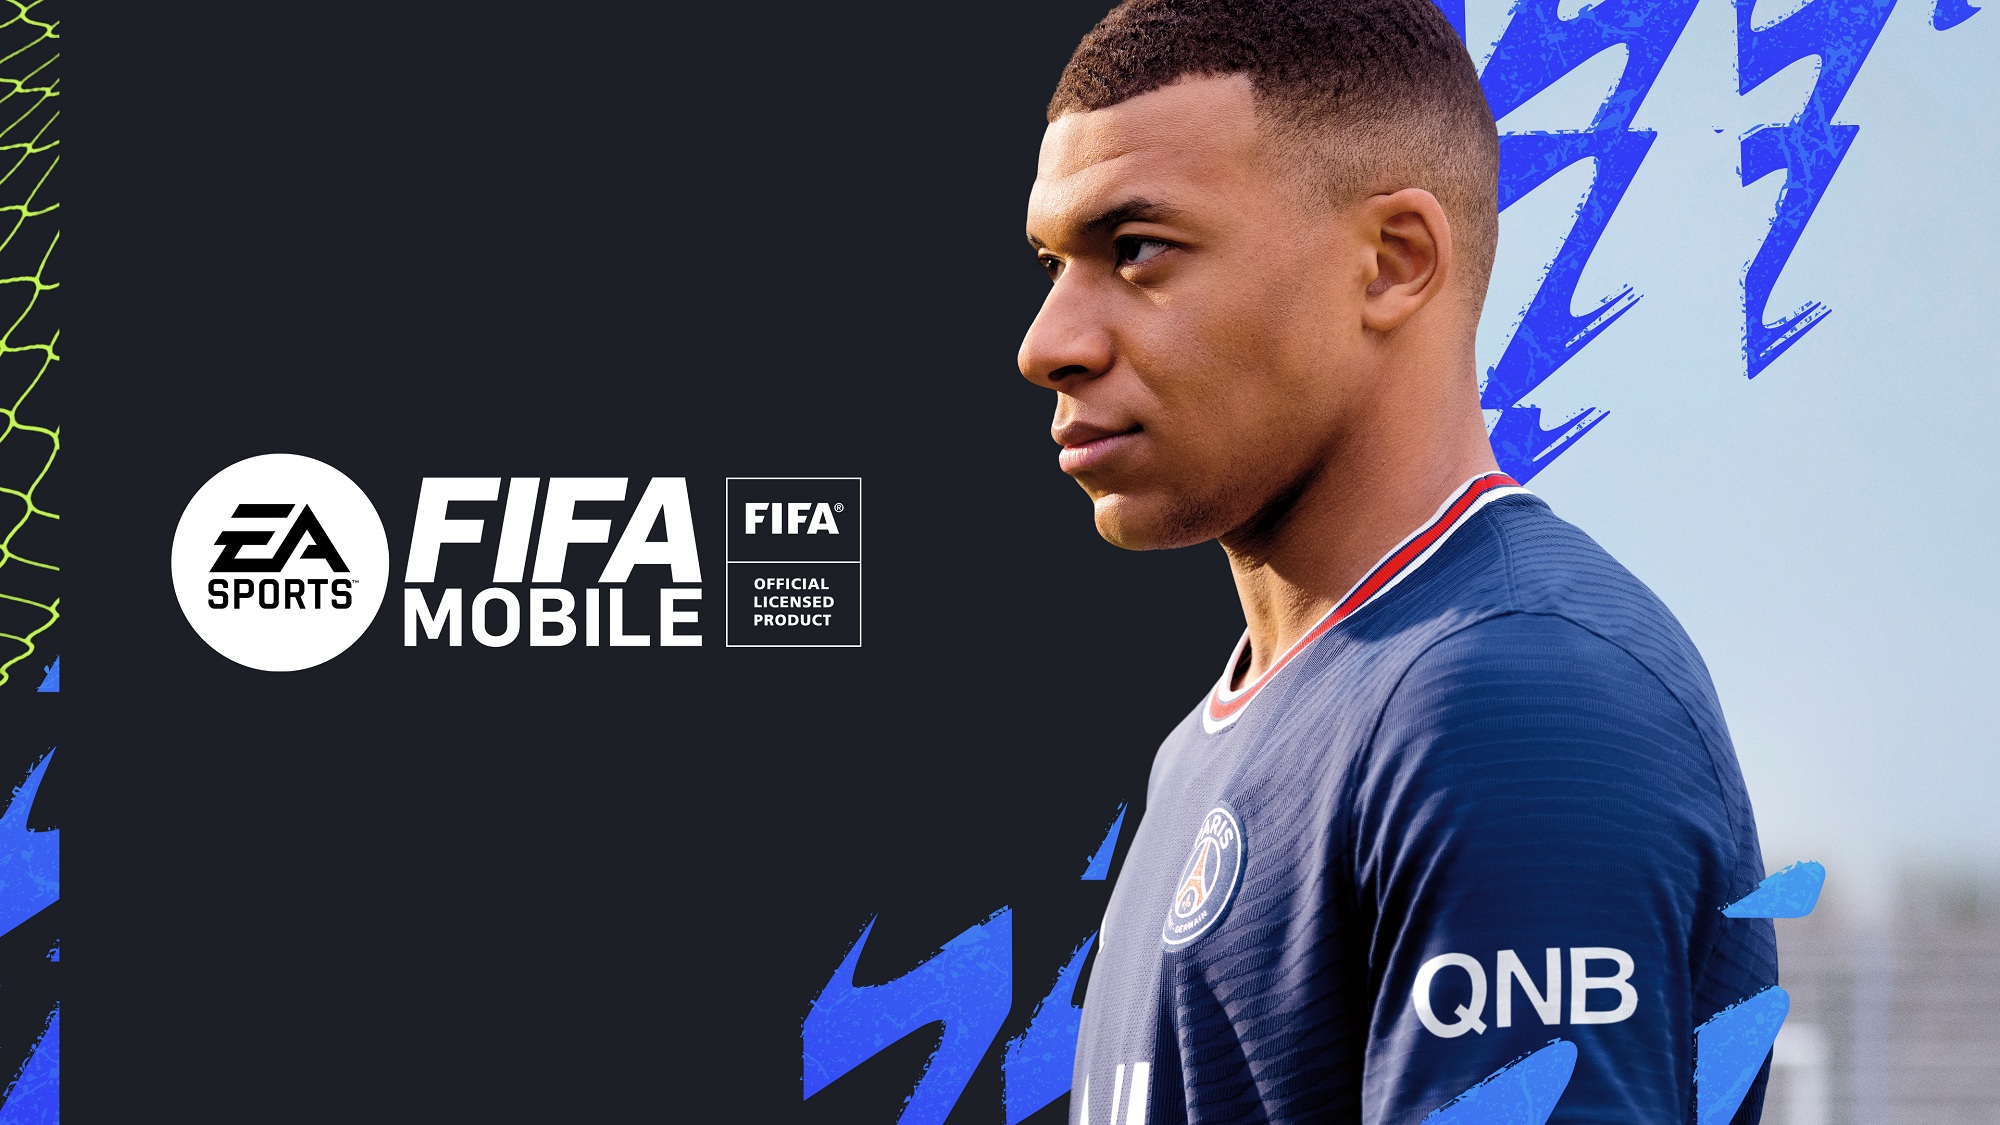 Putus dengan EA, FIFA Kabarnya Garap Game Sepak Bola dengan Mitra Baru